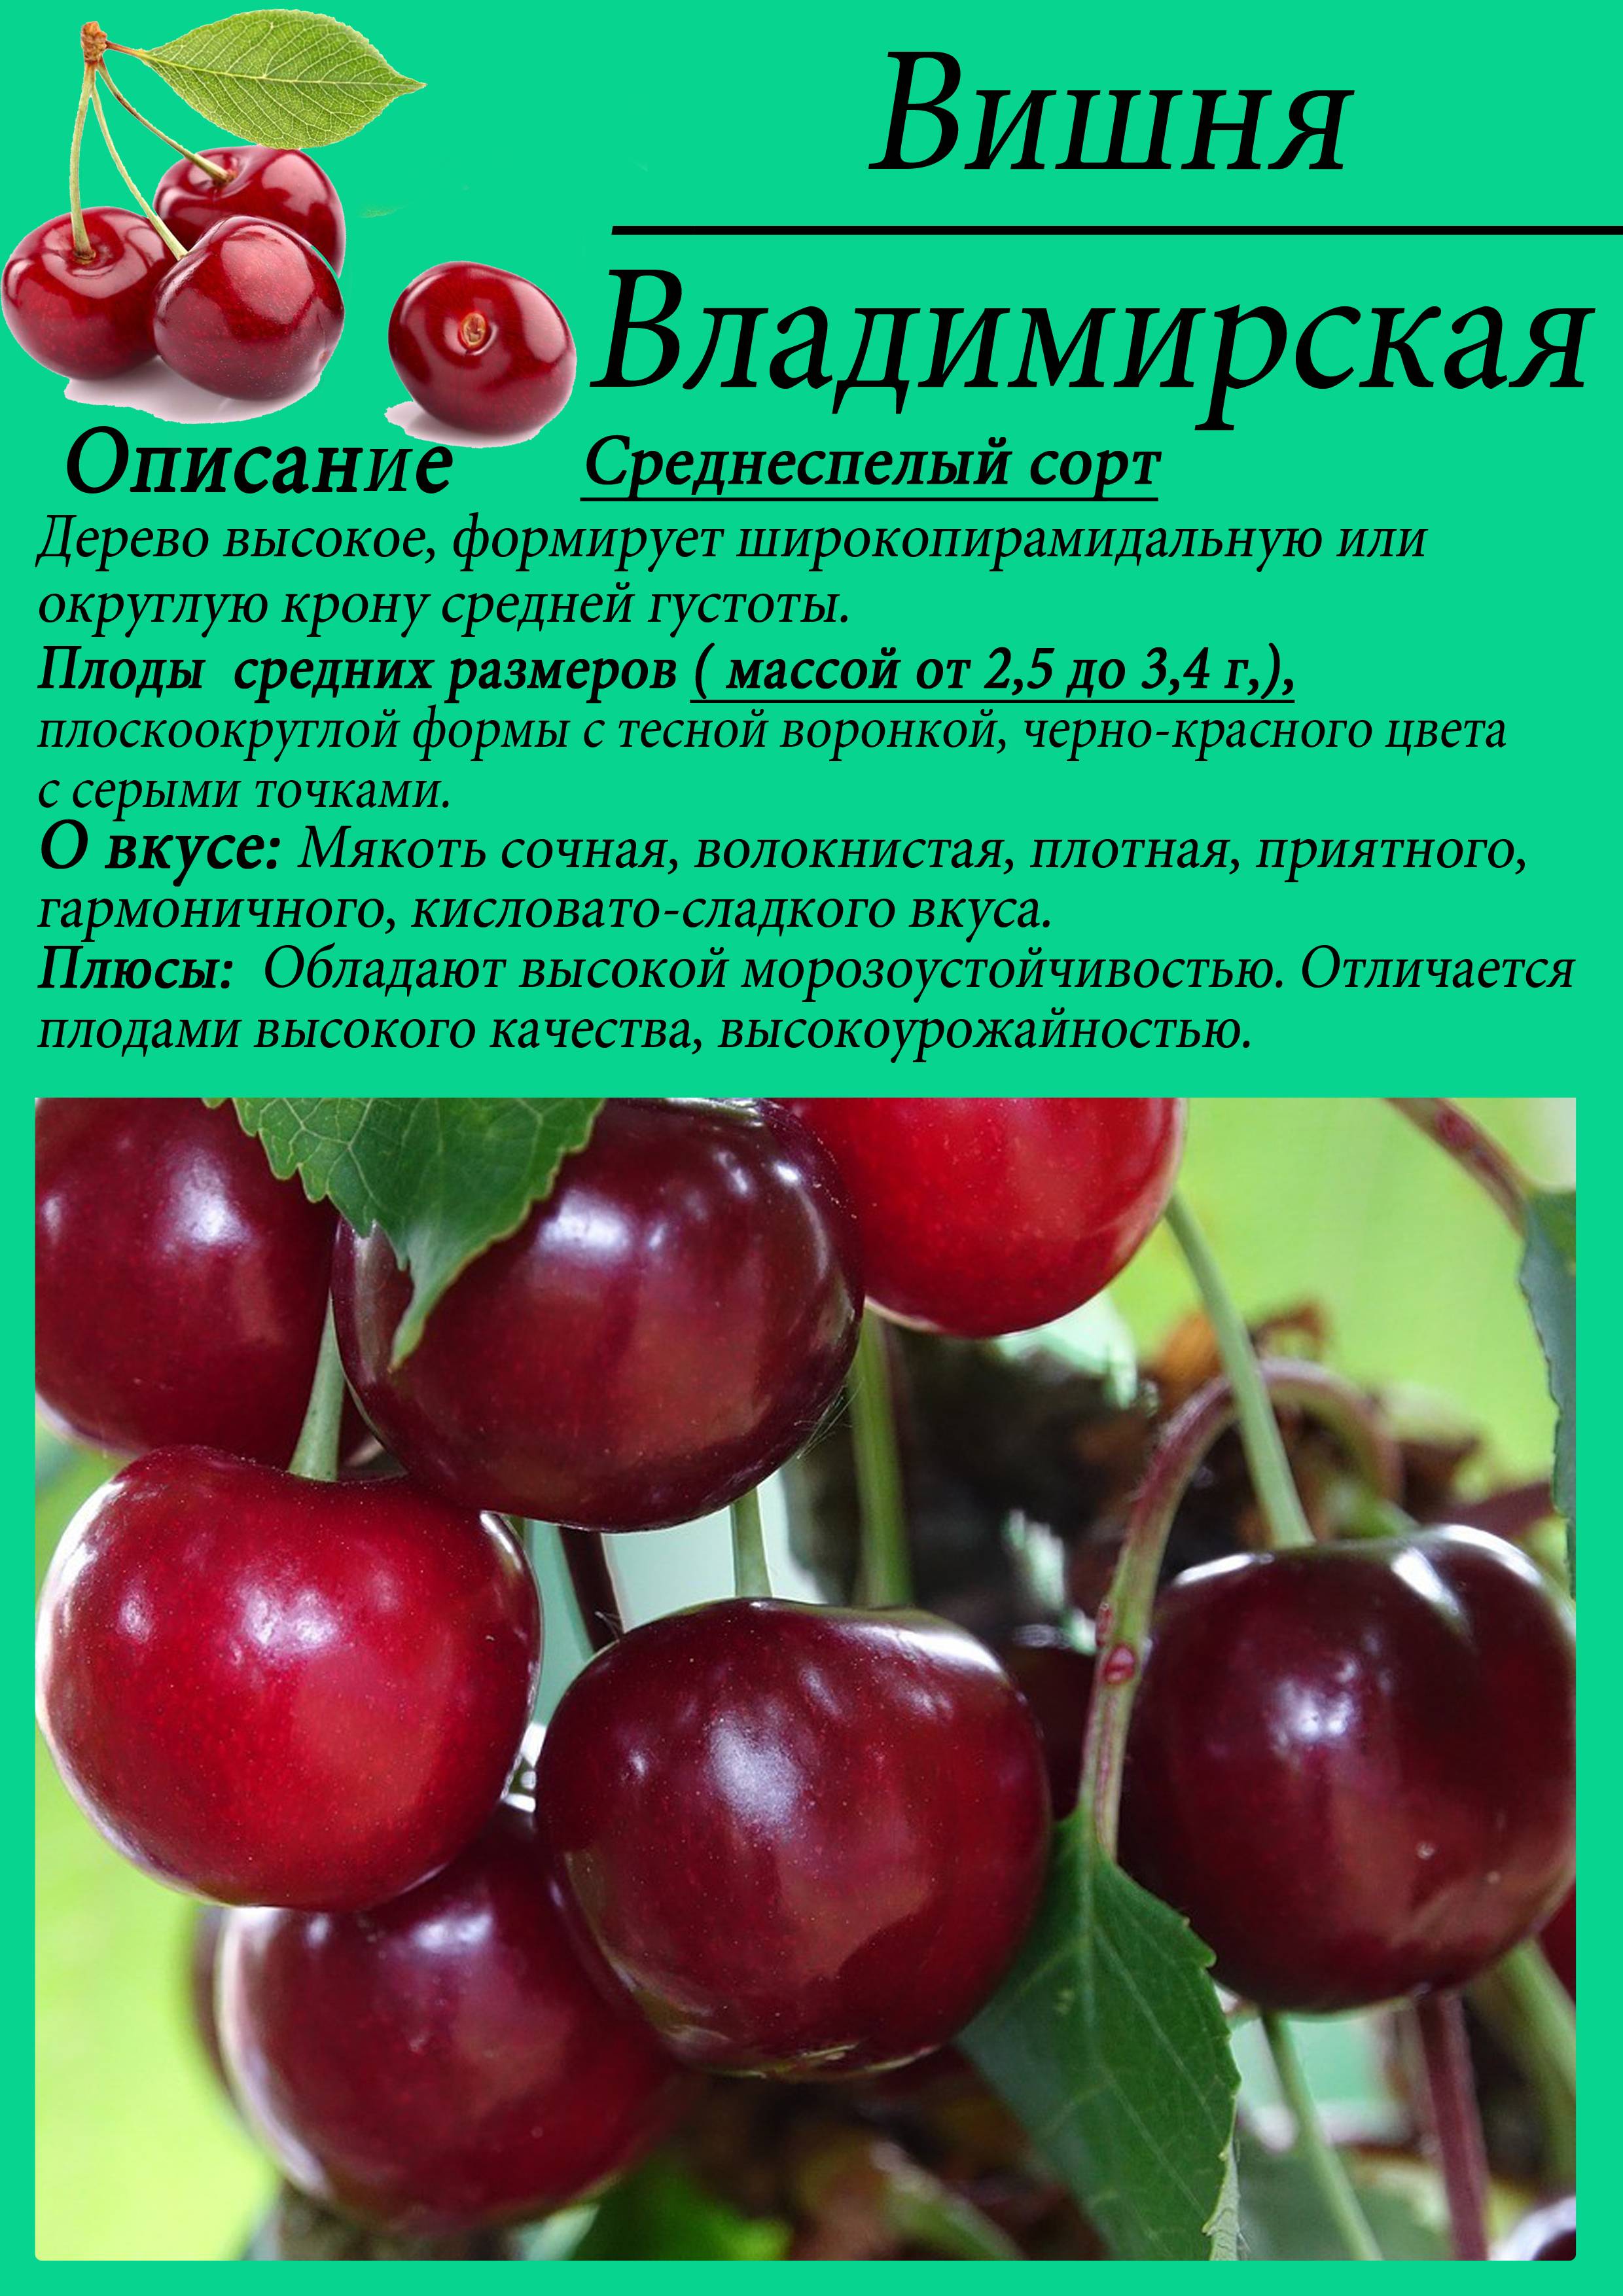 Сорт вишни Владимирская